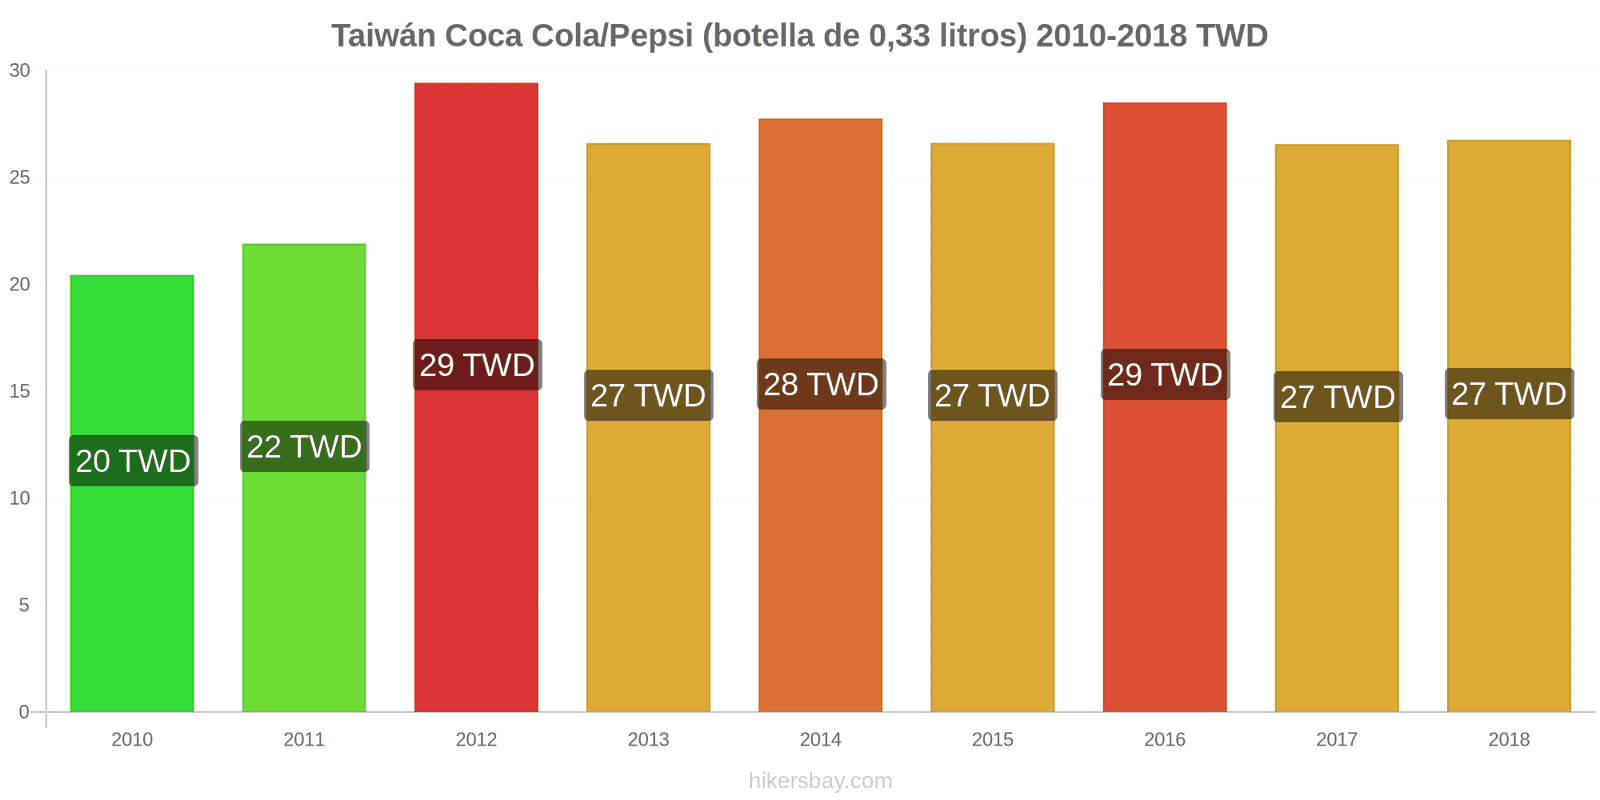 Taiwán cambios de precios Coca-Cola/Pepsi (botella de 0.33 litros) hikersbay.com